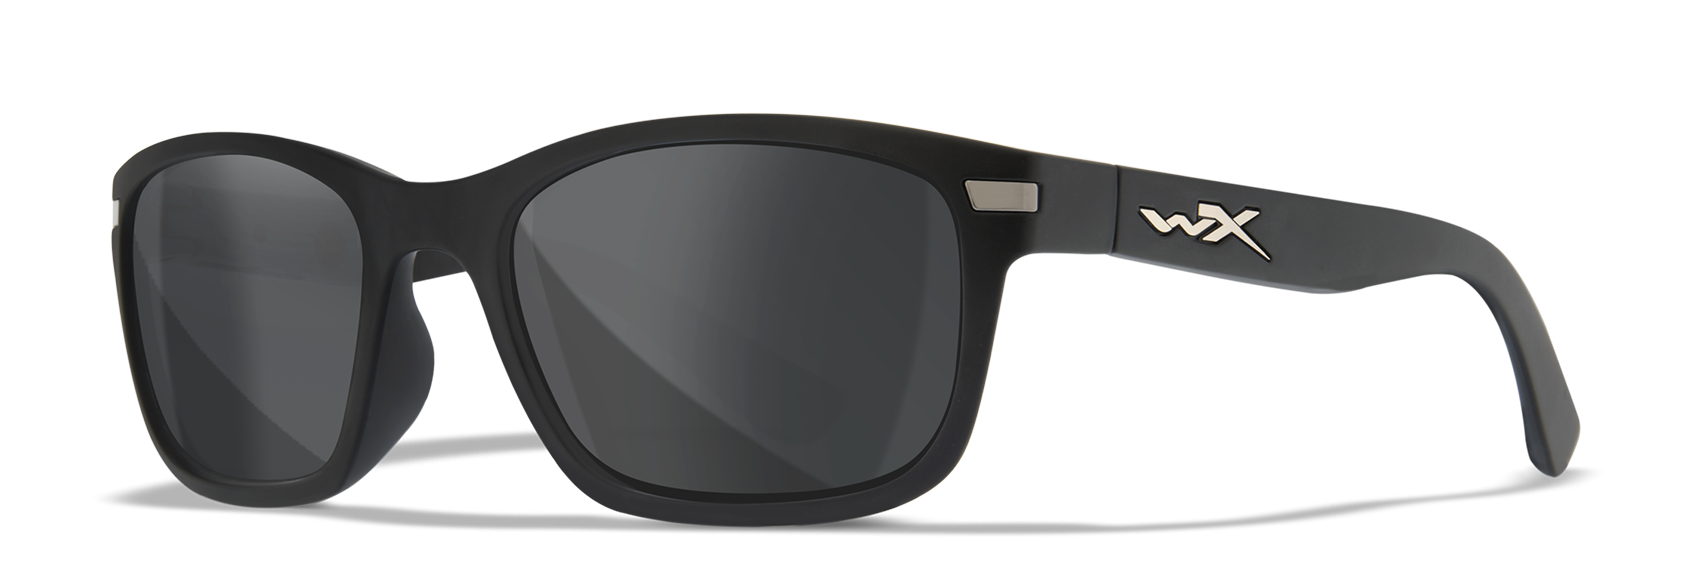 Wiley X WX Helix Matte Black Polycarbonate Sunglasses